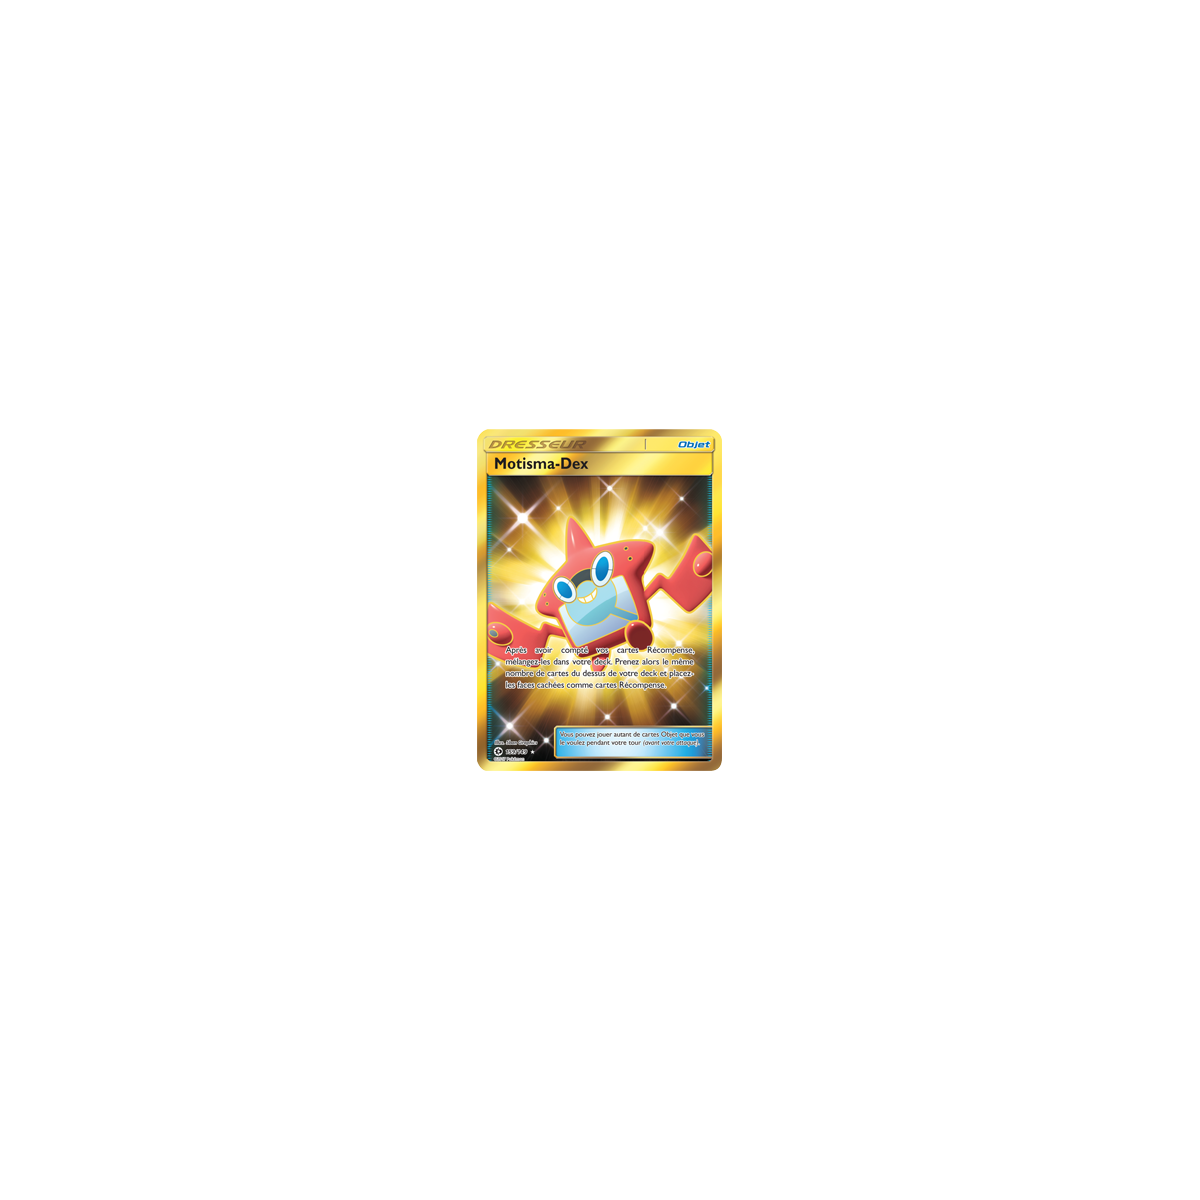 Motisma-Dex 159/149 : Joyau Holographique rare de l'extension Pokémon Soleil et Lune (JCC)